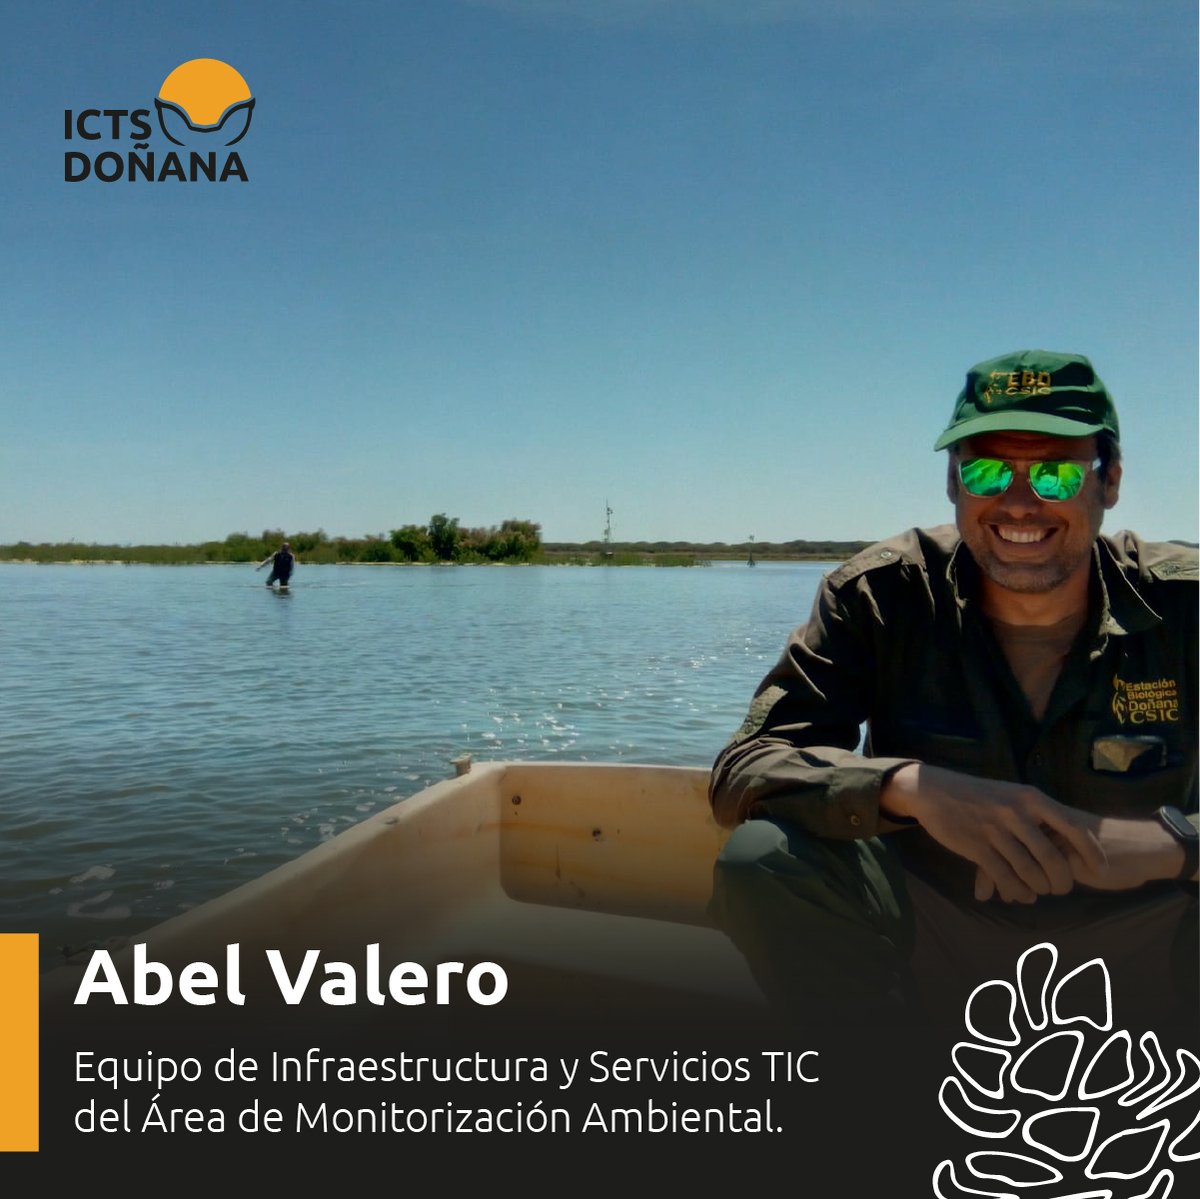 🌿 La labor que realiza el personal de la #ICTSDoñana es fundamental para la protección de este enclave natural 👏. 👉 Es el caso de Abel Valero, que trabaja en en el Equipo de Infraestructura y Servicios TIC del Área de Monitorización Ambiental. #ICTSNews #LaboratorioVivo